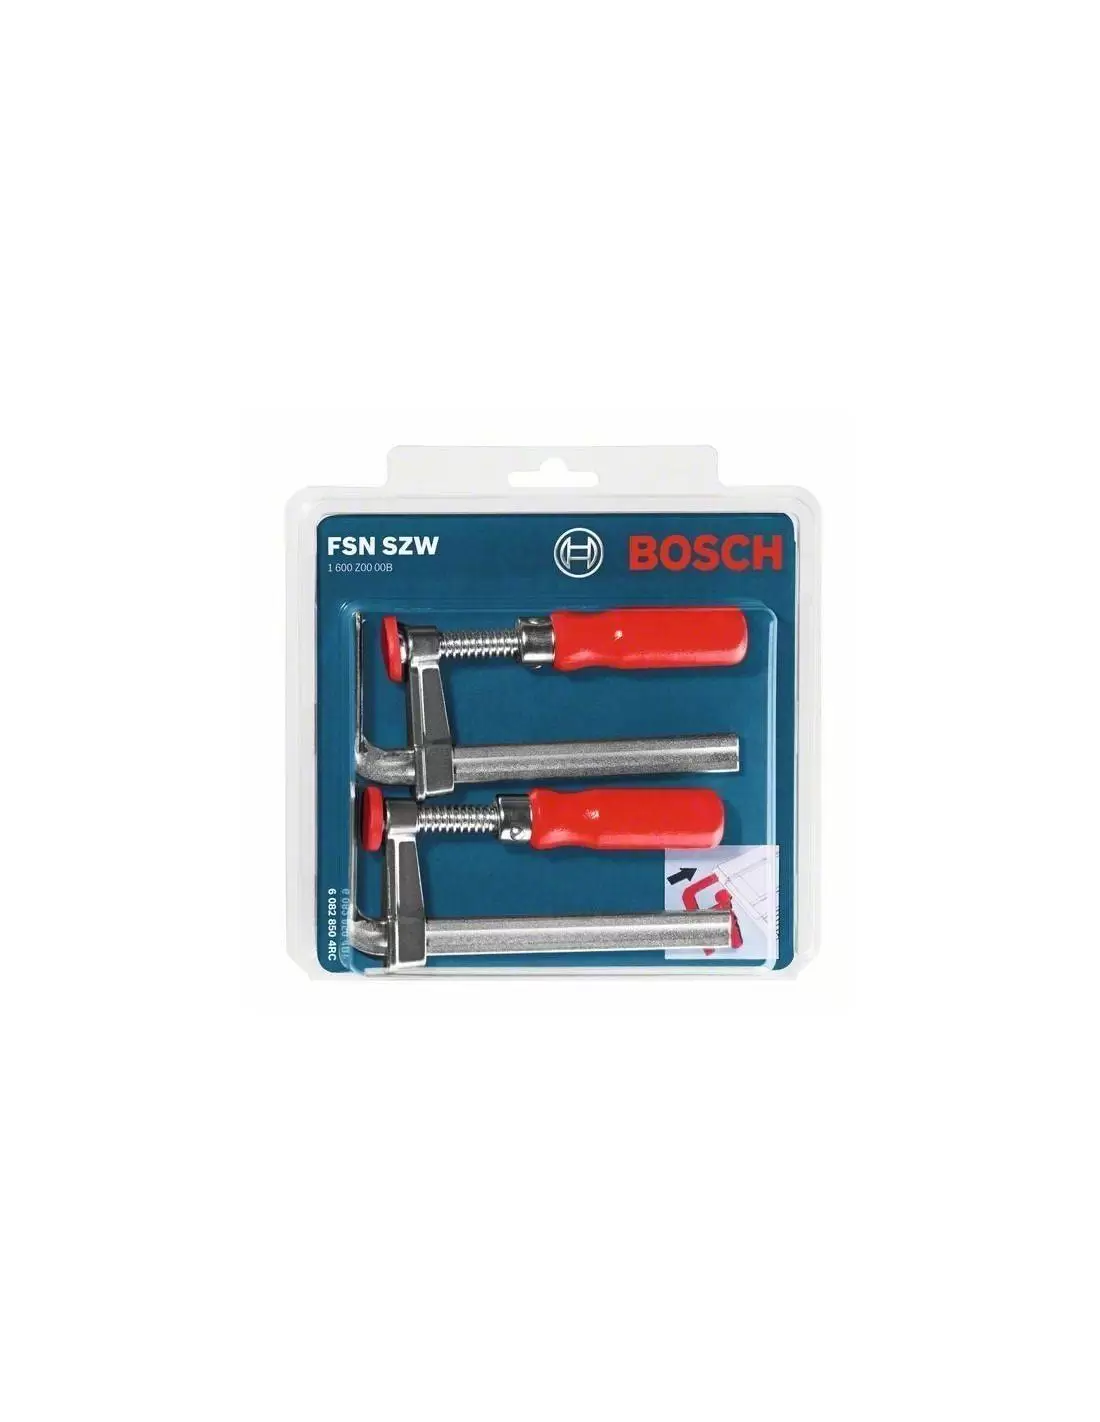 Bosch Accessories 2 serre-joints (accessoires pour rails de